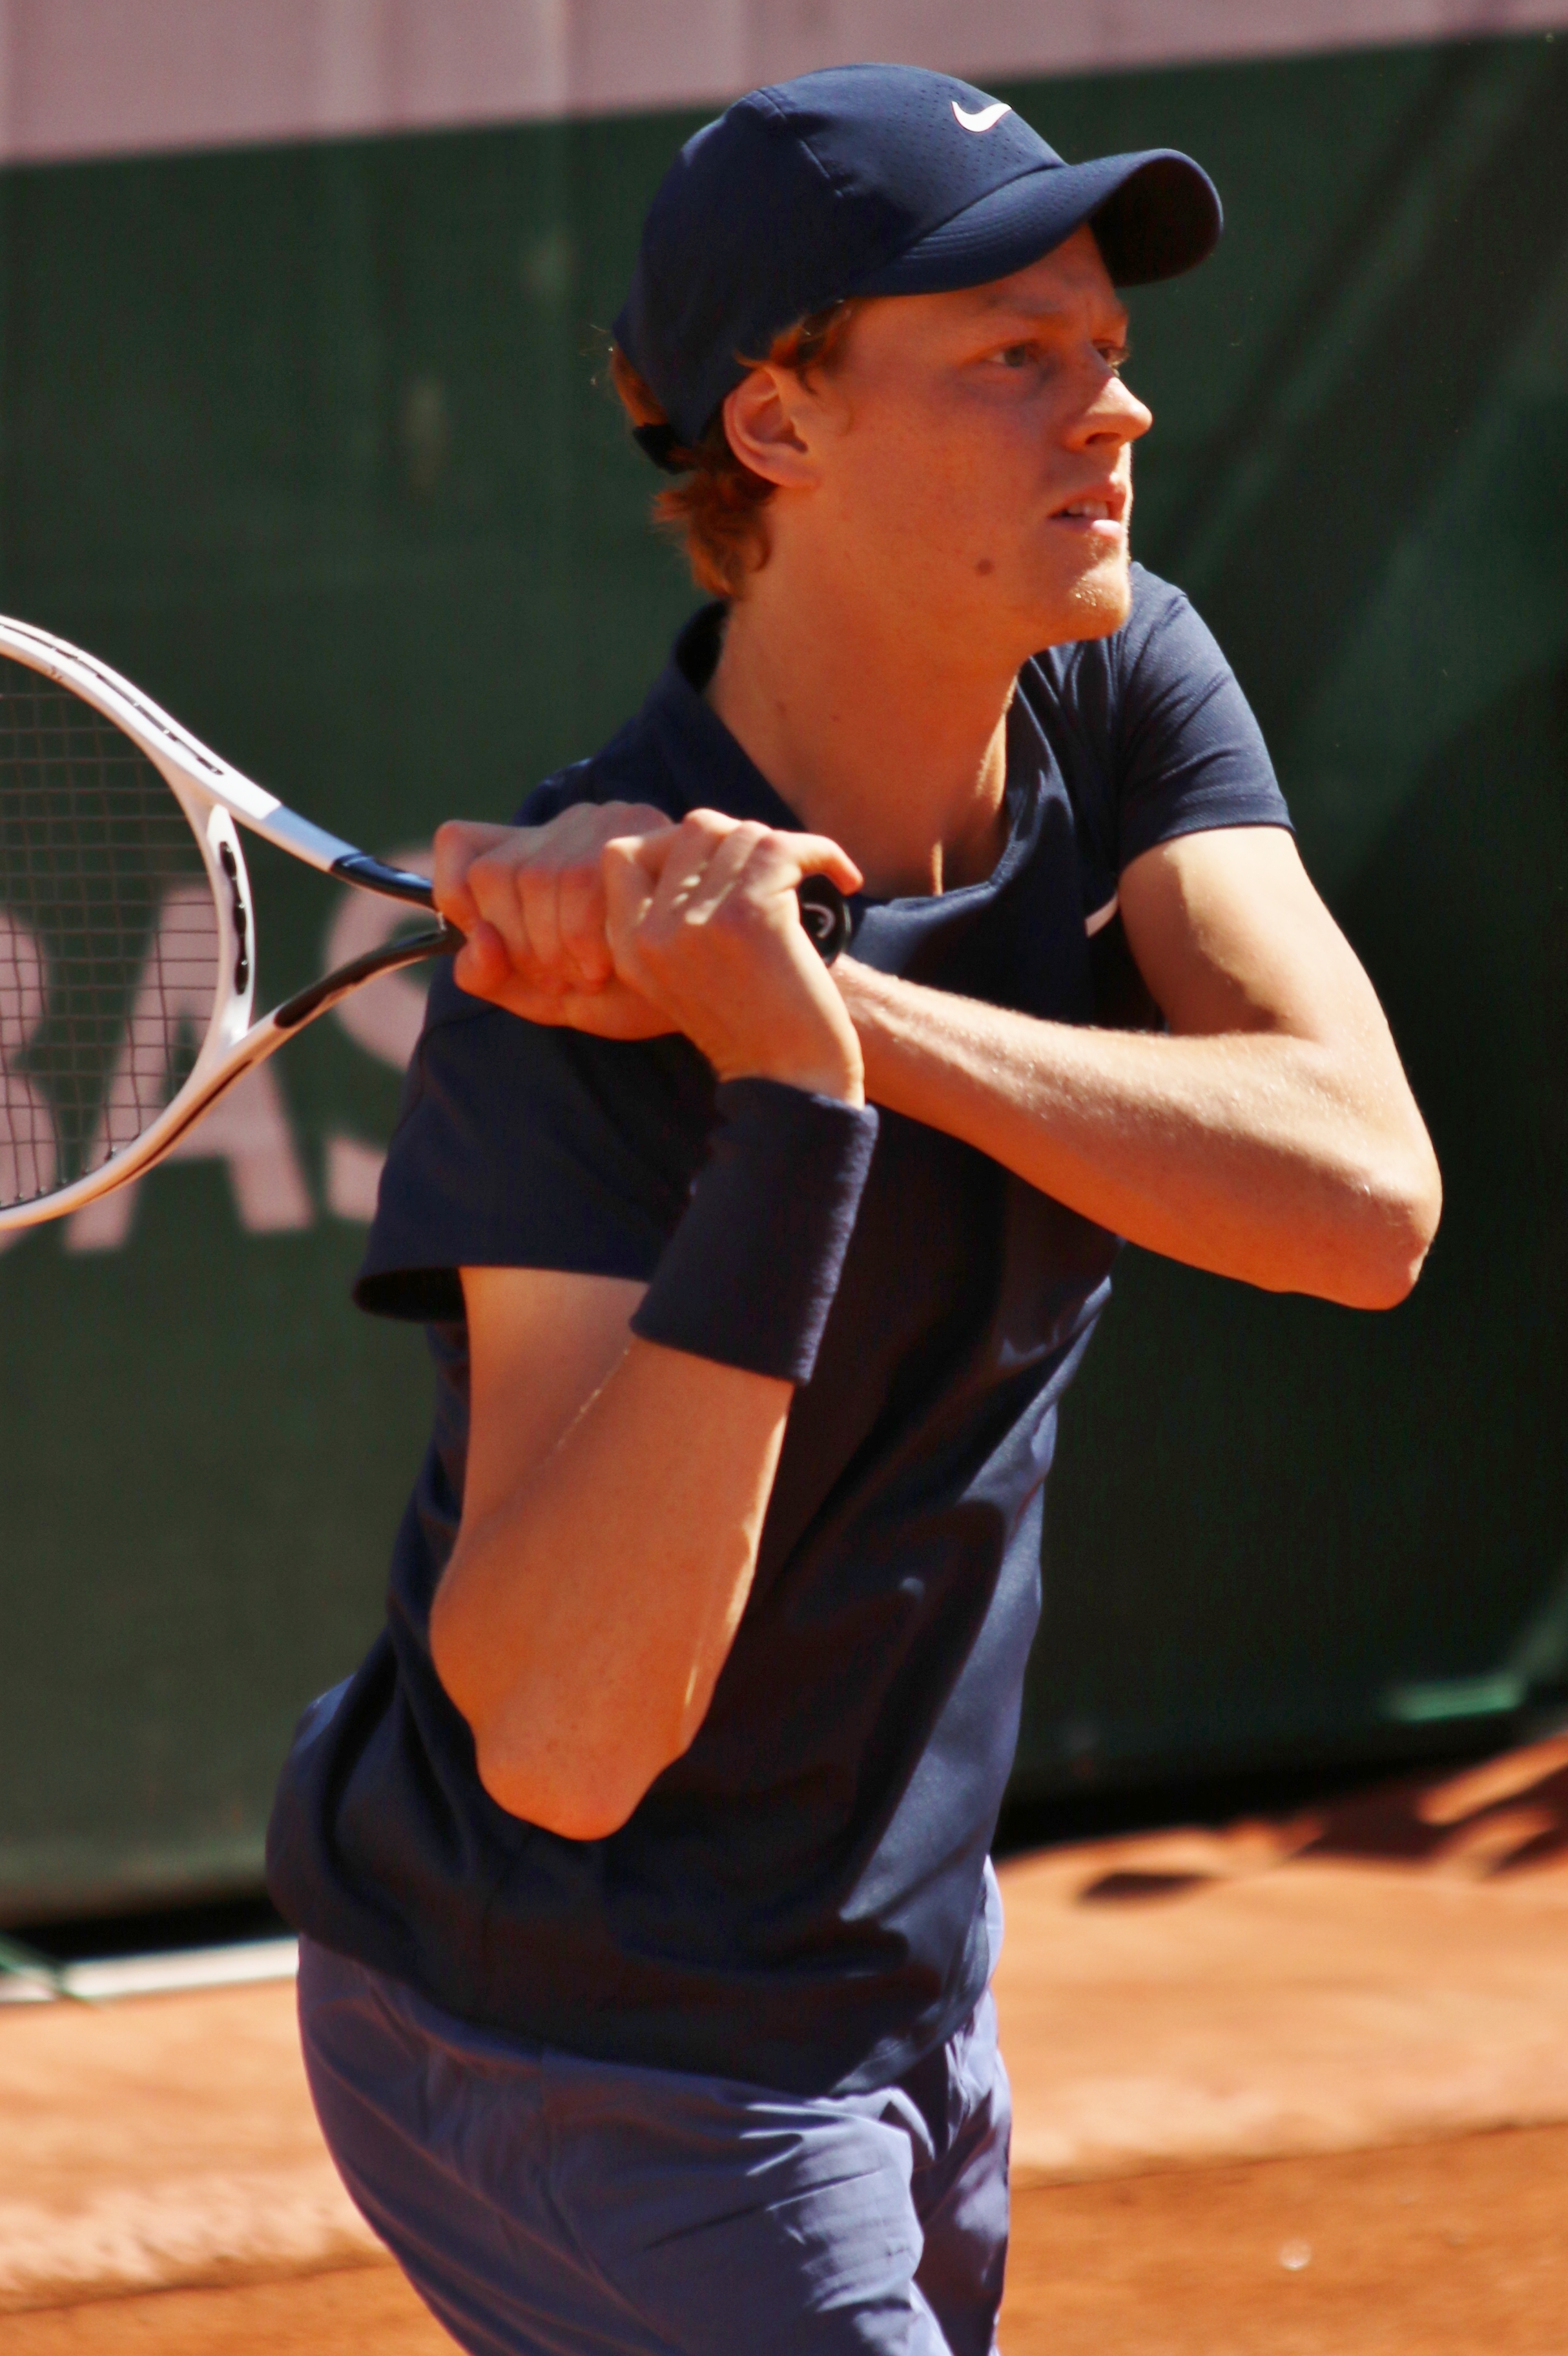 Italian Open (tennis) - Wikipedia